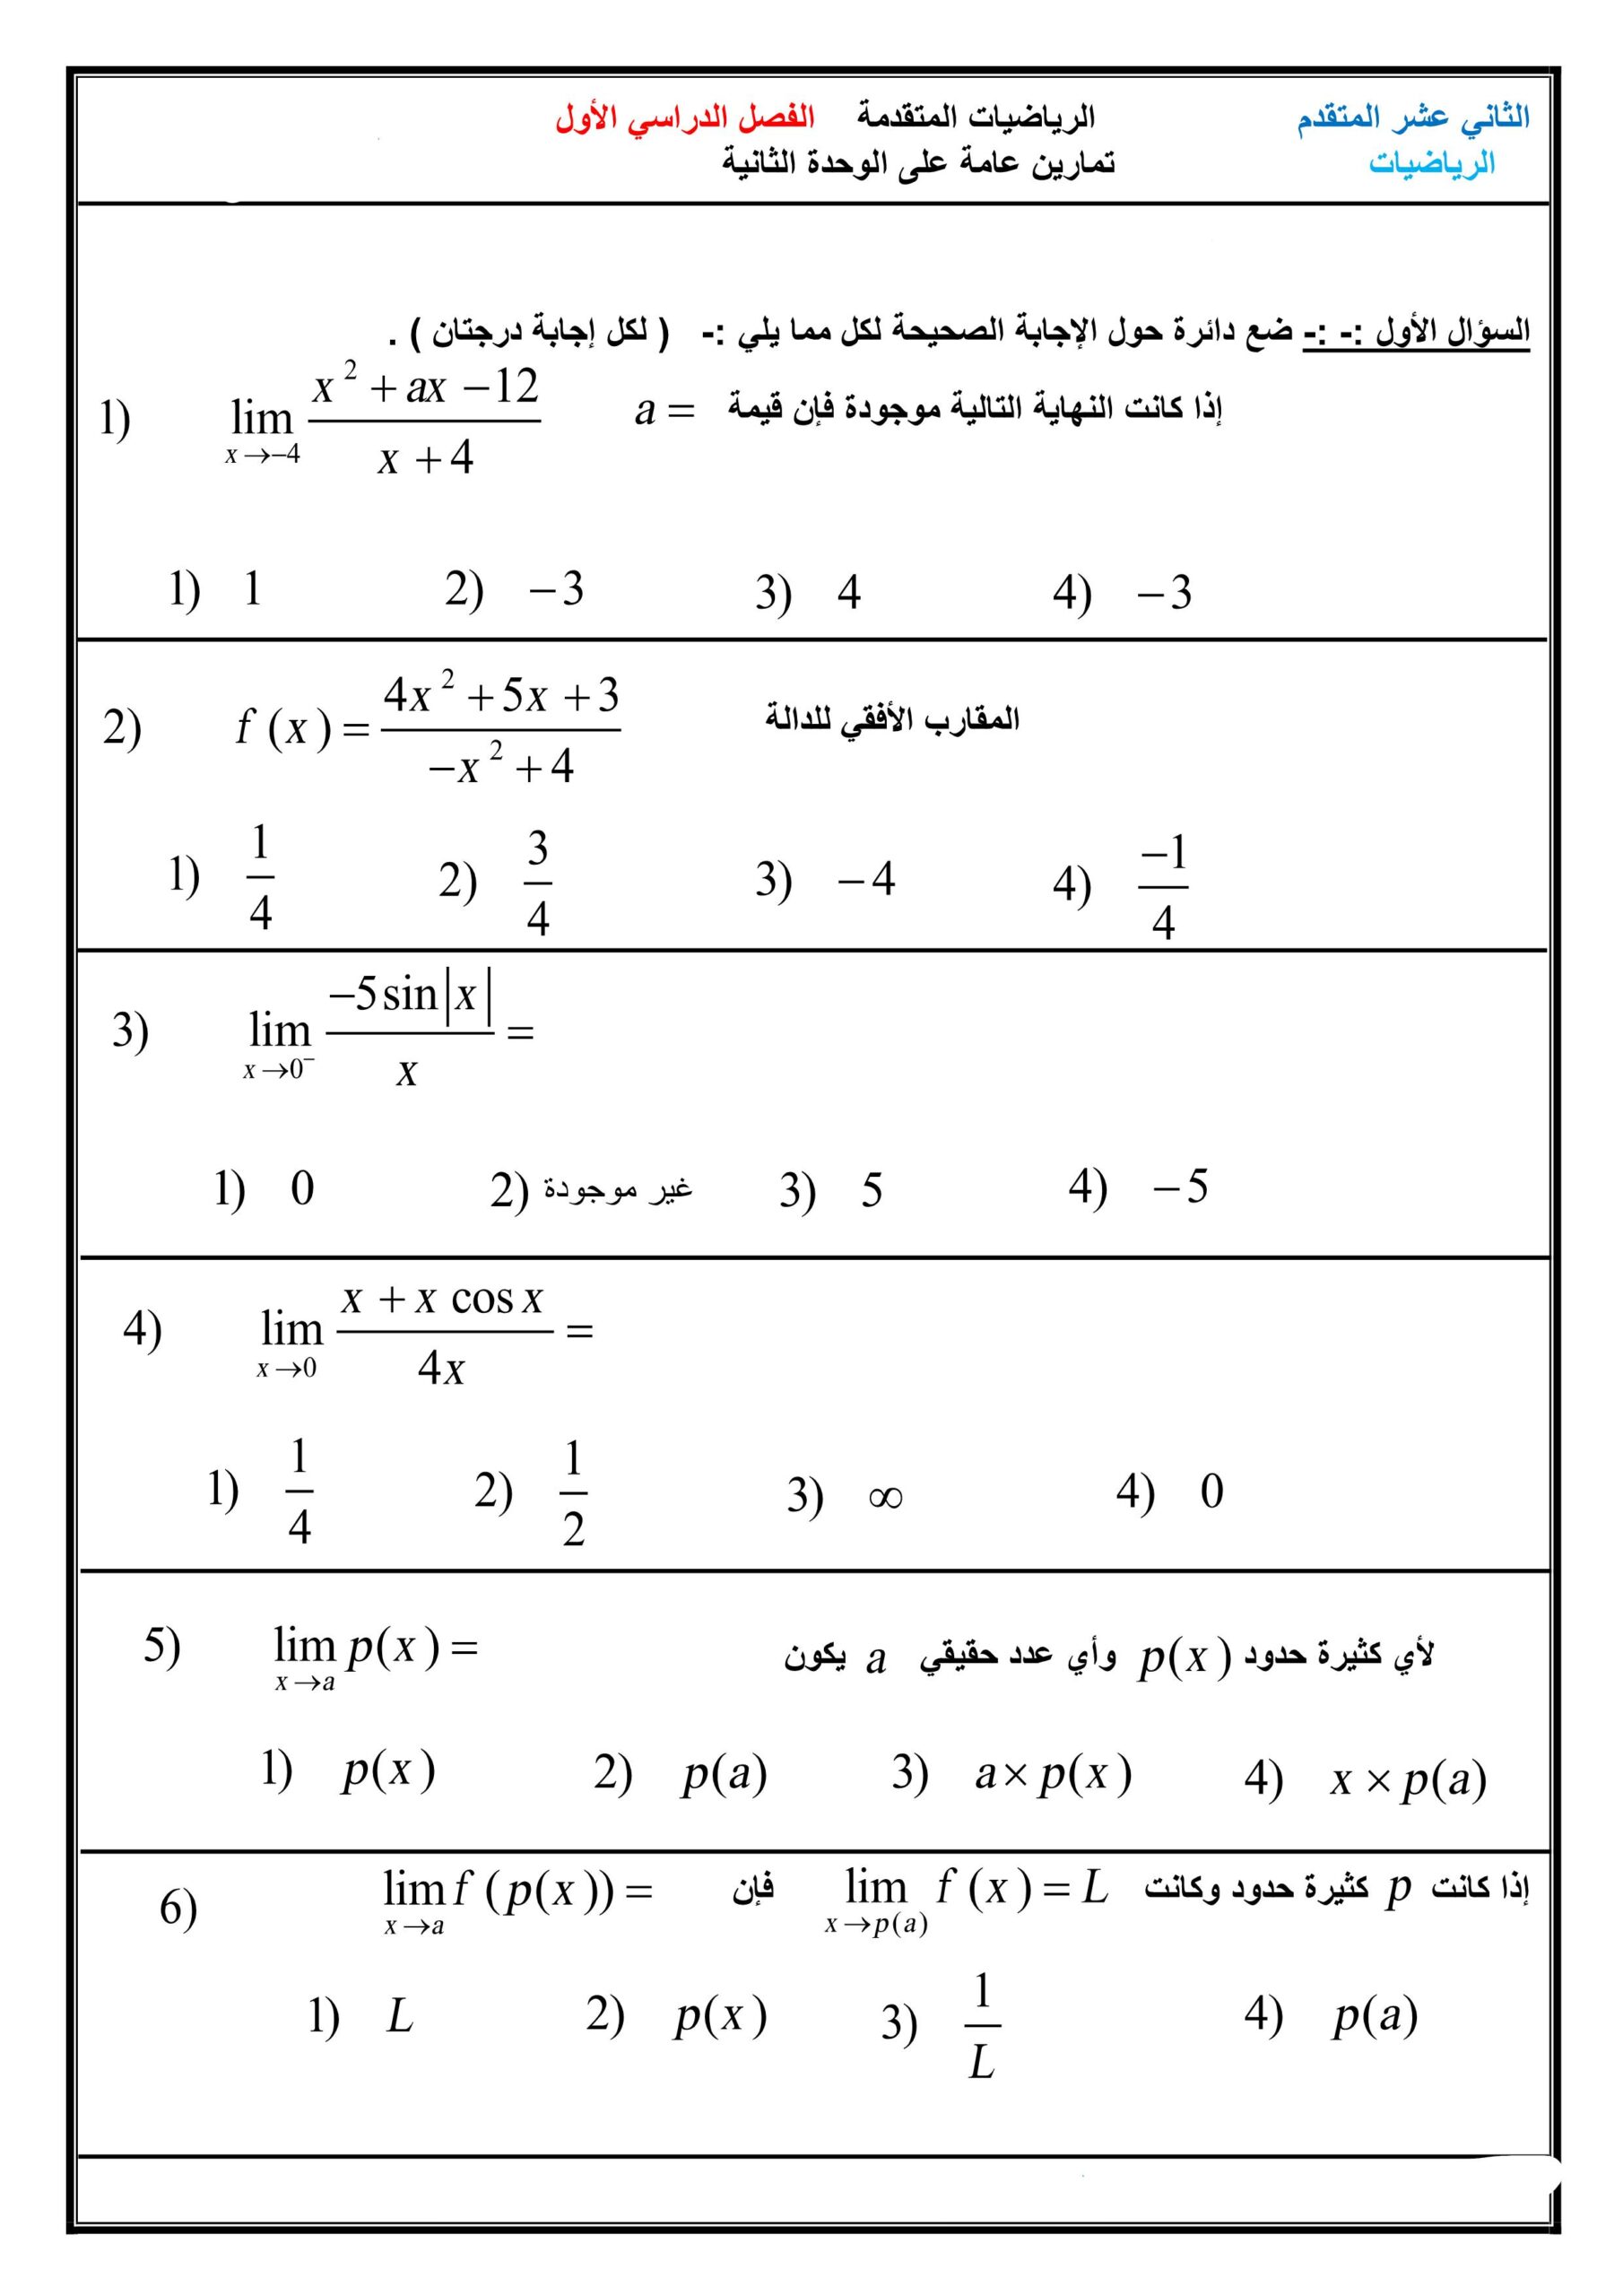 تمارين عامة الوحدة الثانية النهايات والاتصال الرياضيات المتكاملة الصف الثاني عشر متقدم